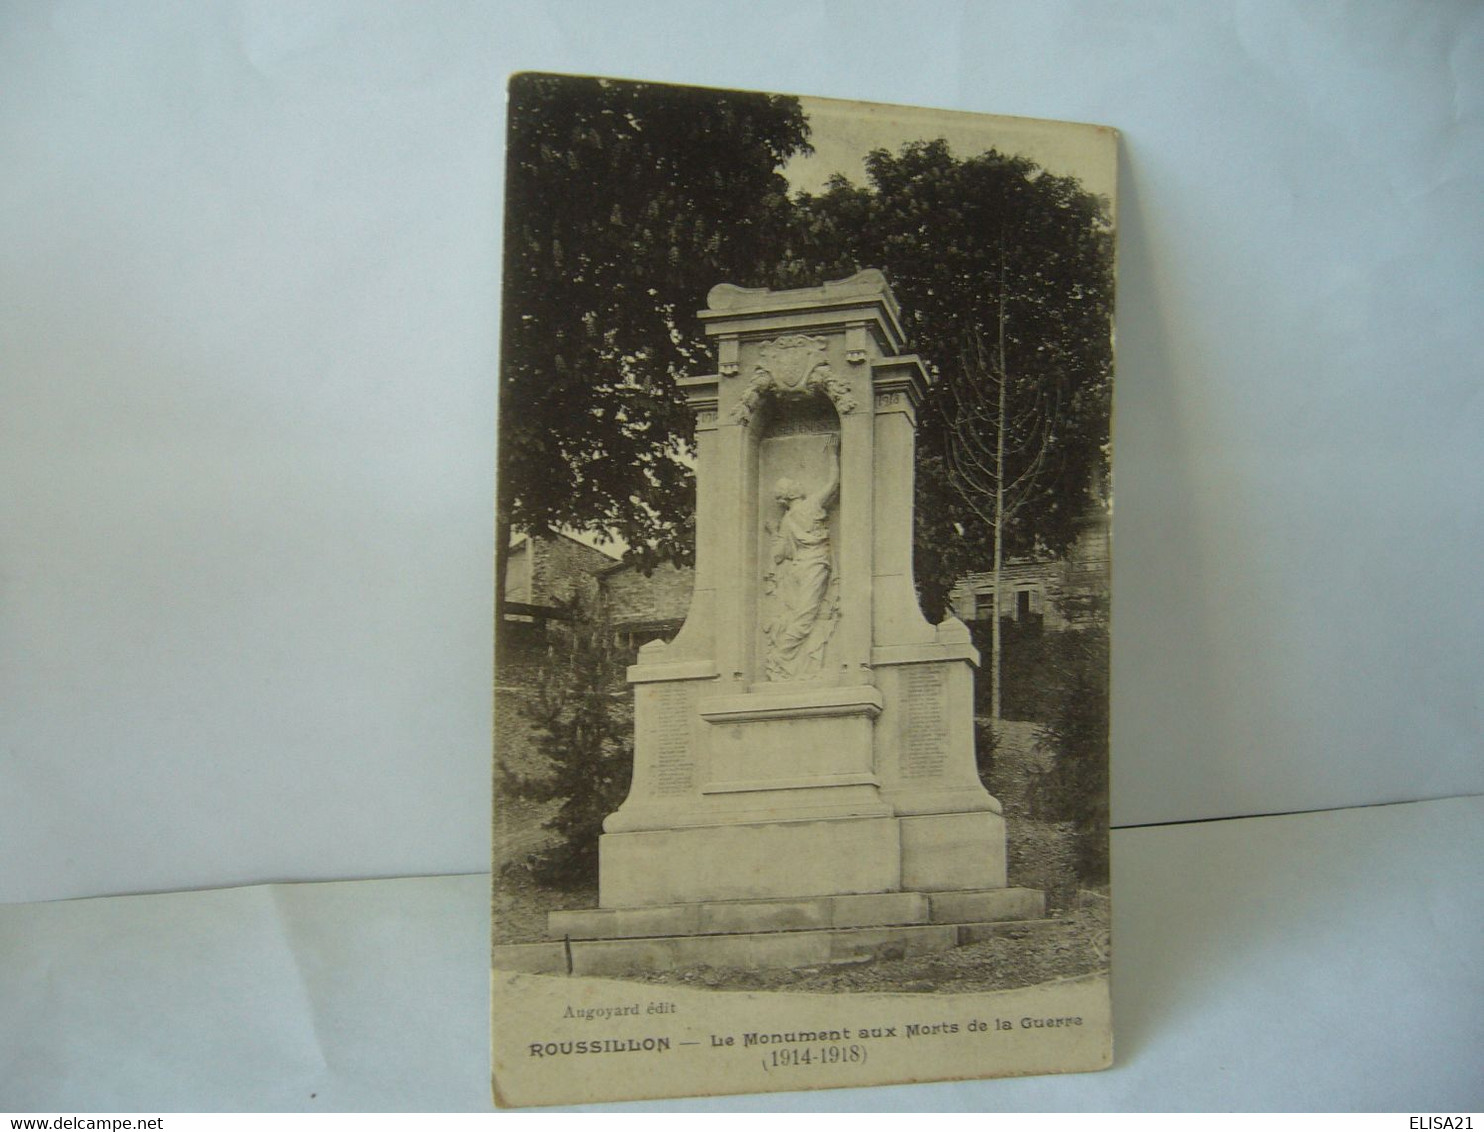 ROUSILLON LE MONIMENT AUX MORTS DE LA GUERRE 1914.1918 CPA AUGOYARD EDIT - Monuments Aux Morts